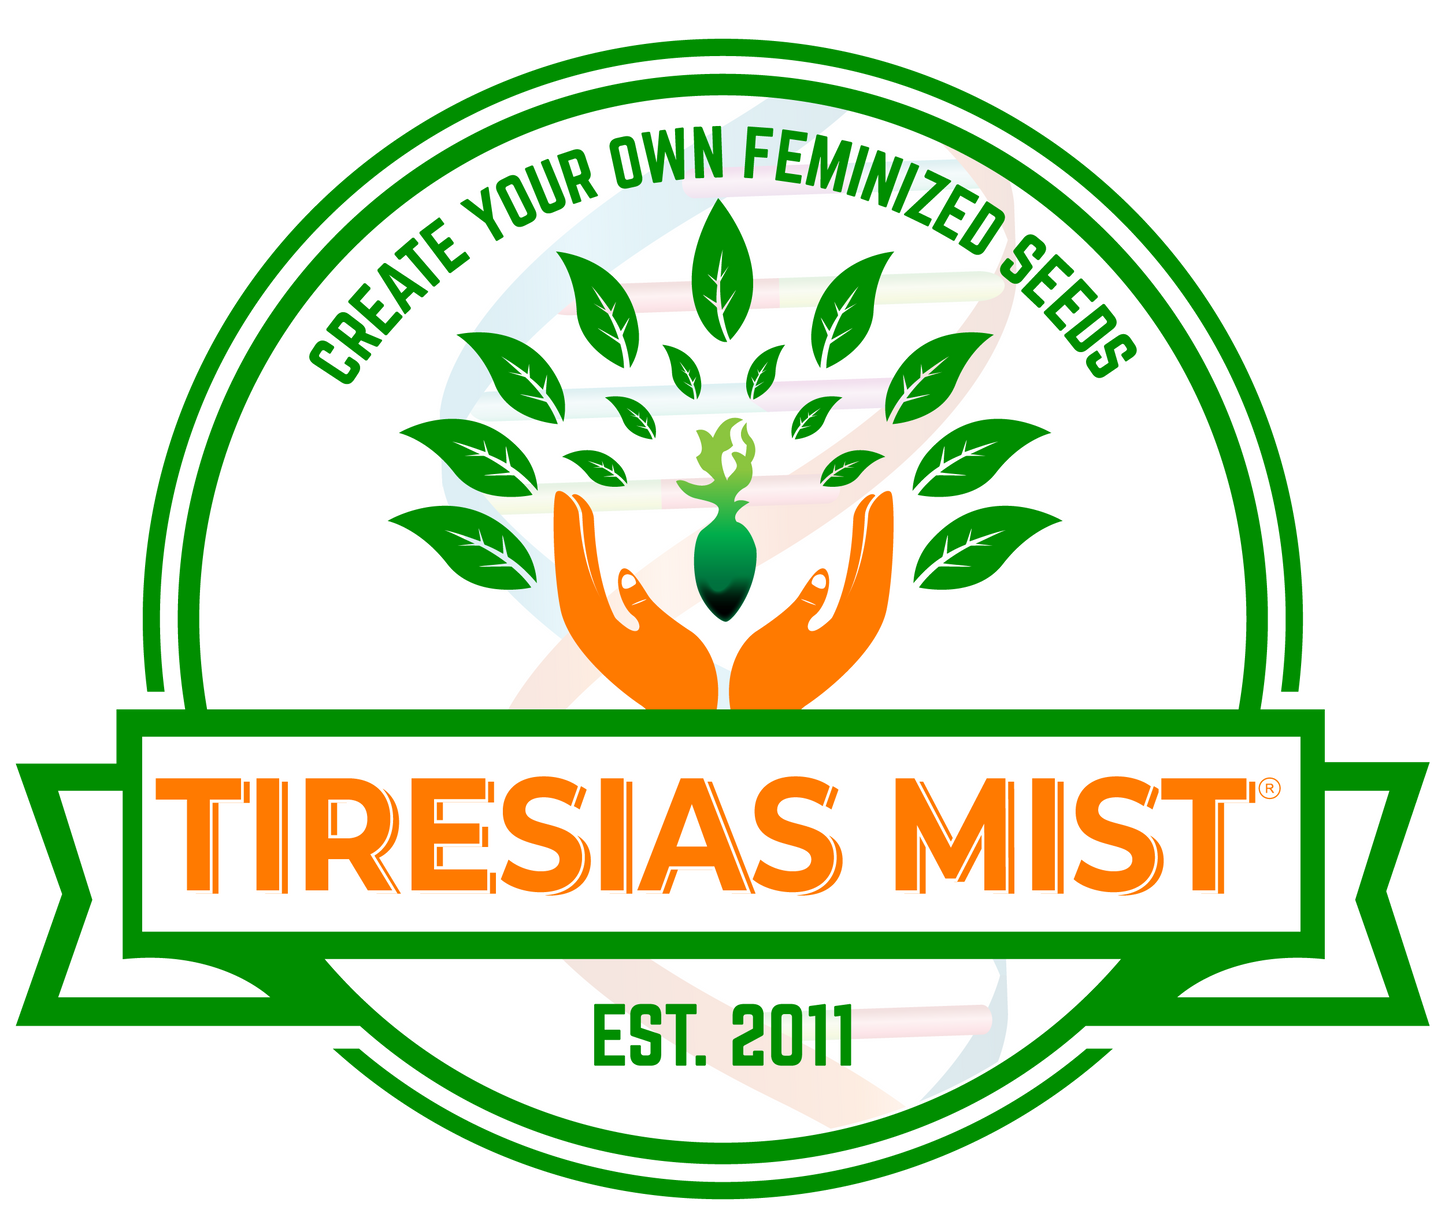 Tiresias Mist Feminizing Seed Spray-One plant per ounce